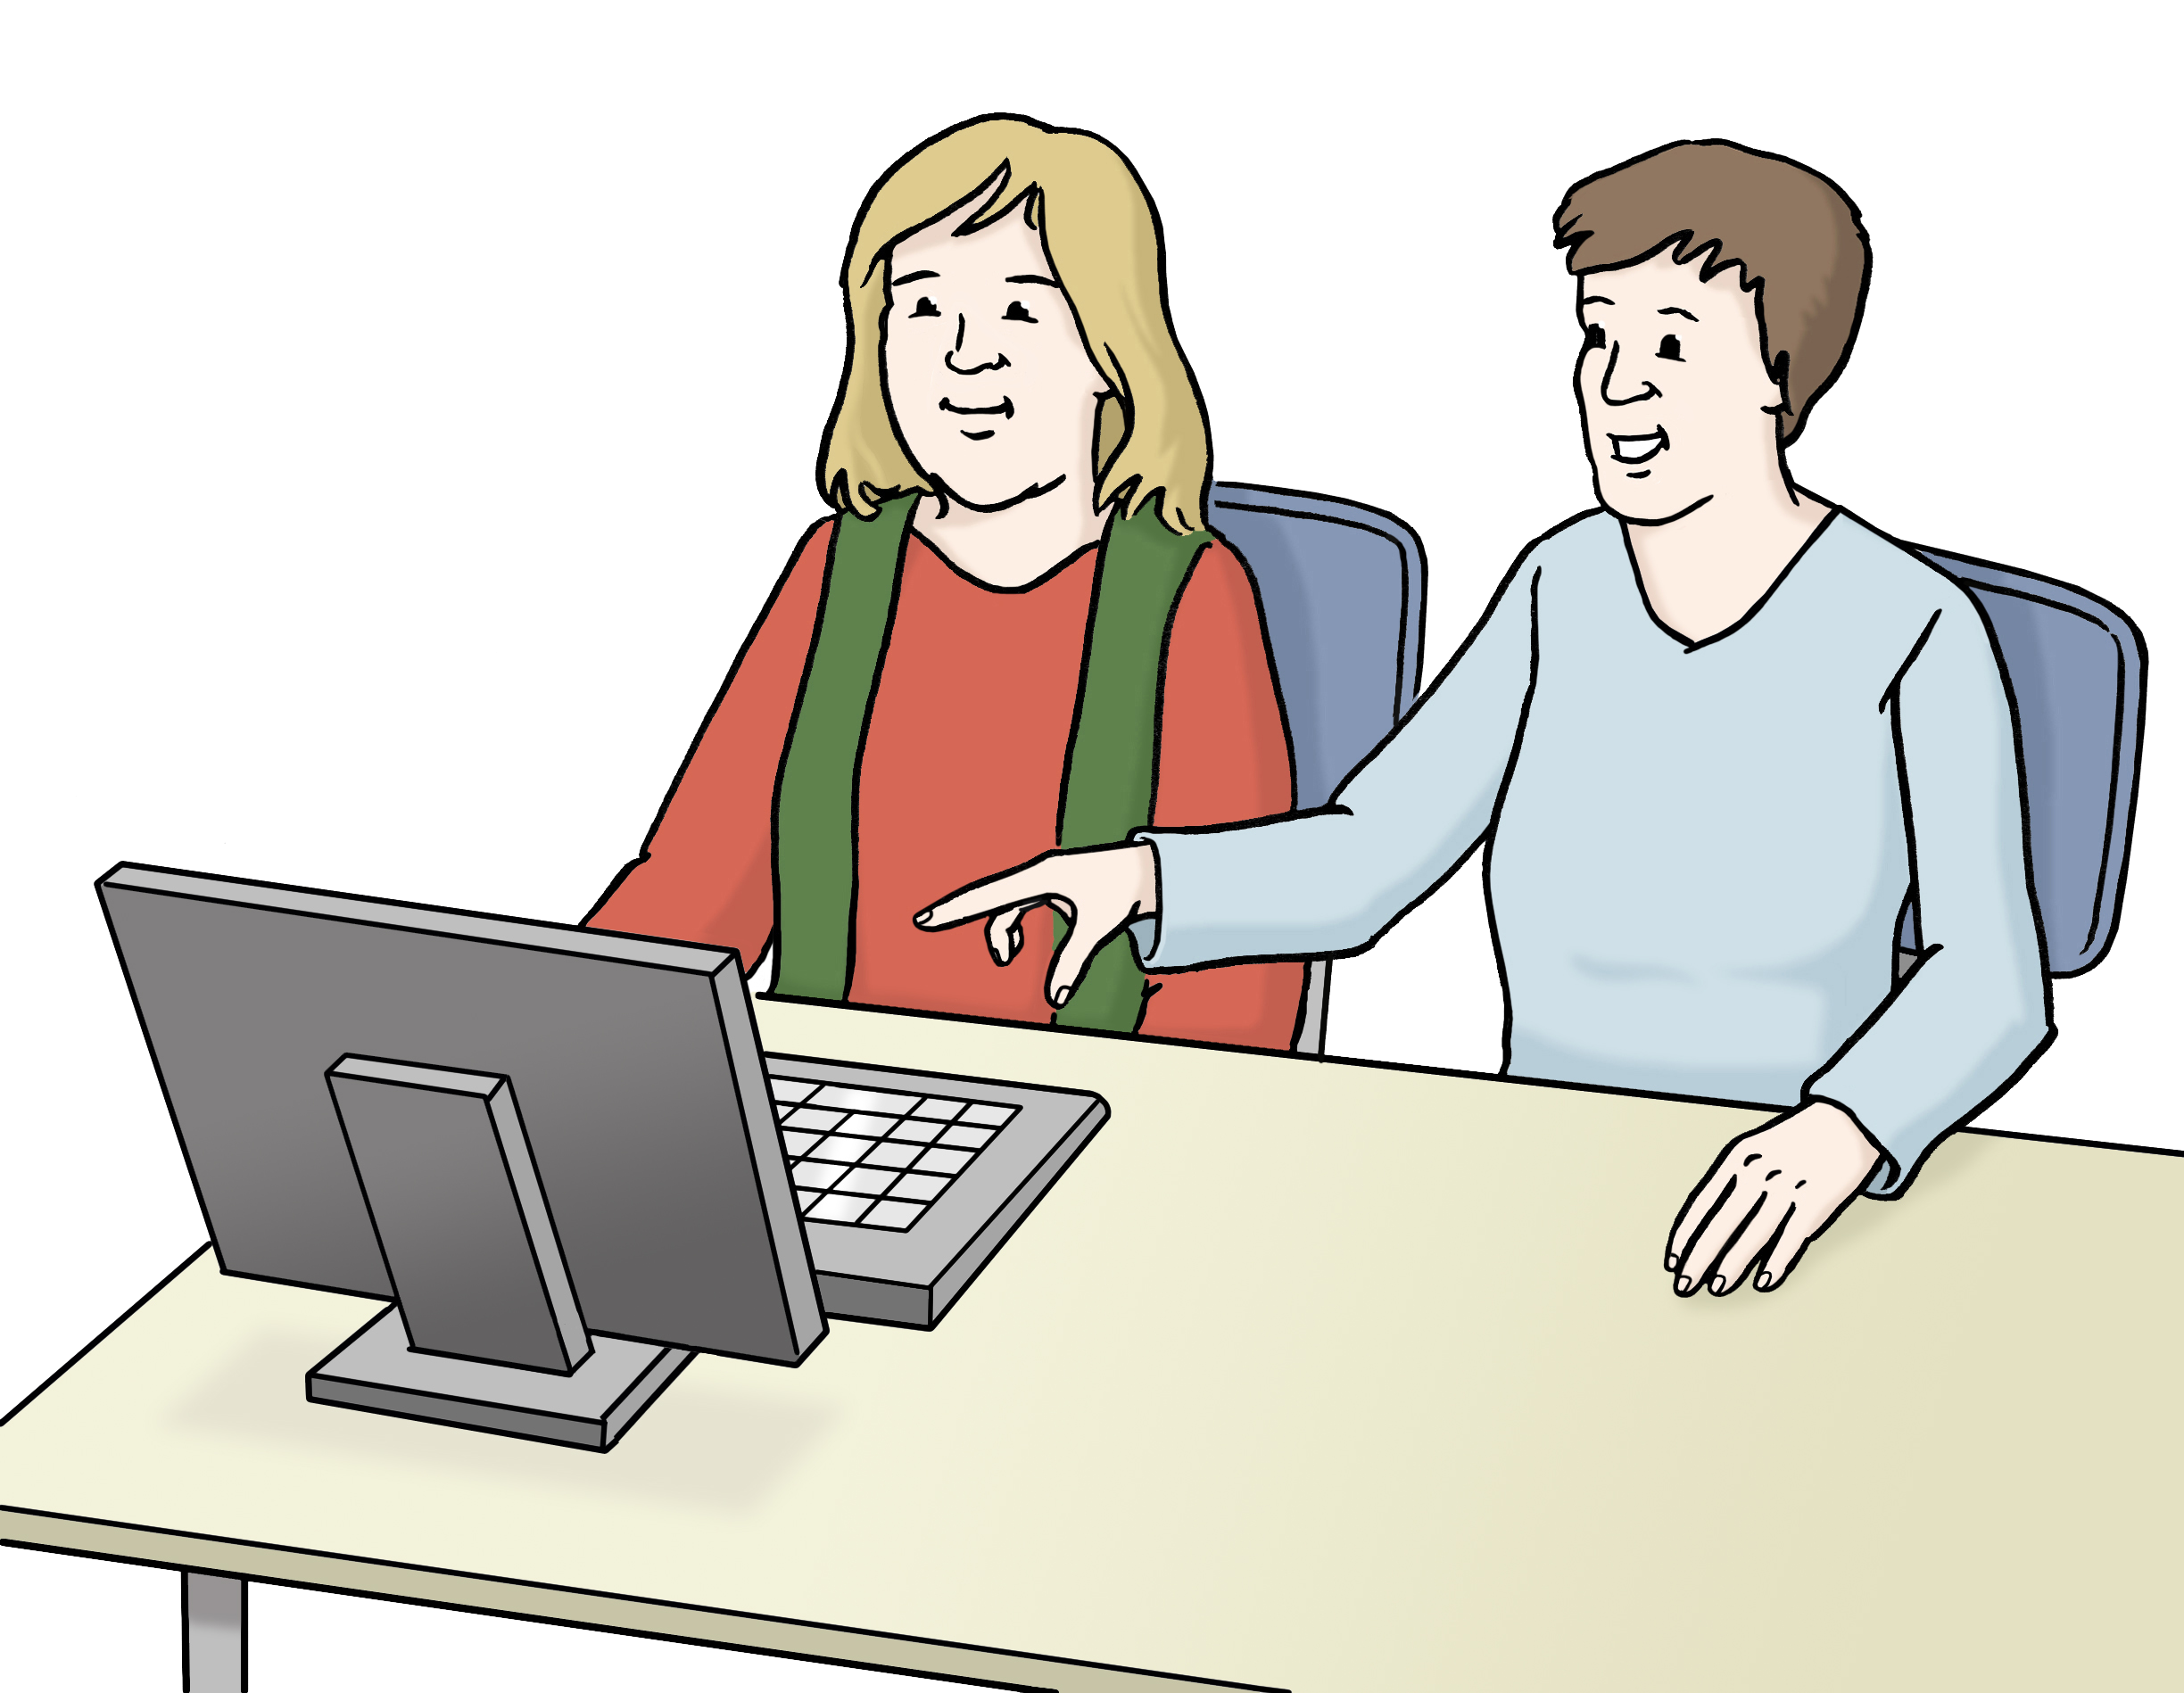 Zwei Frauen sitzen nebeneinander vor einem Bildschirm, während die rechte Person auf den Bildschirm zeigt.